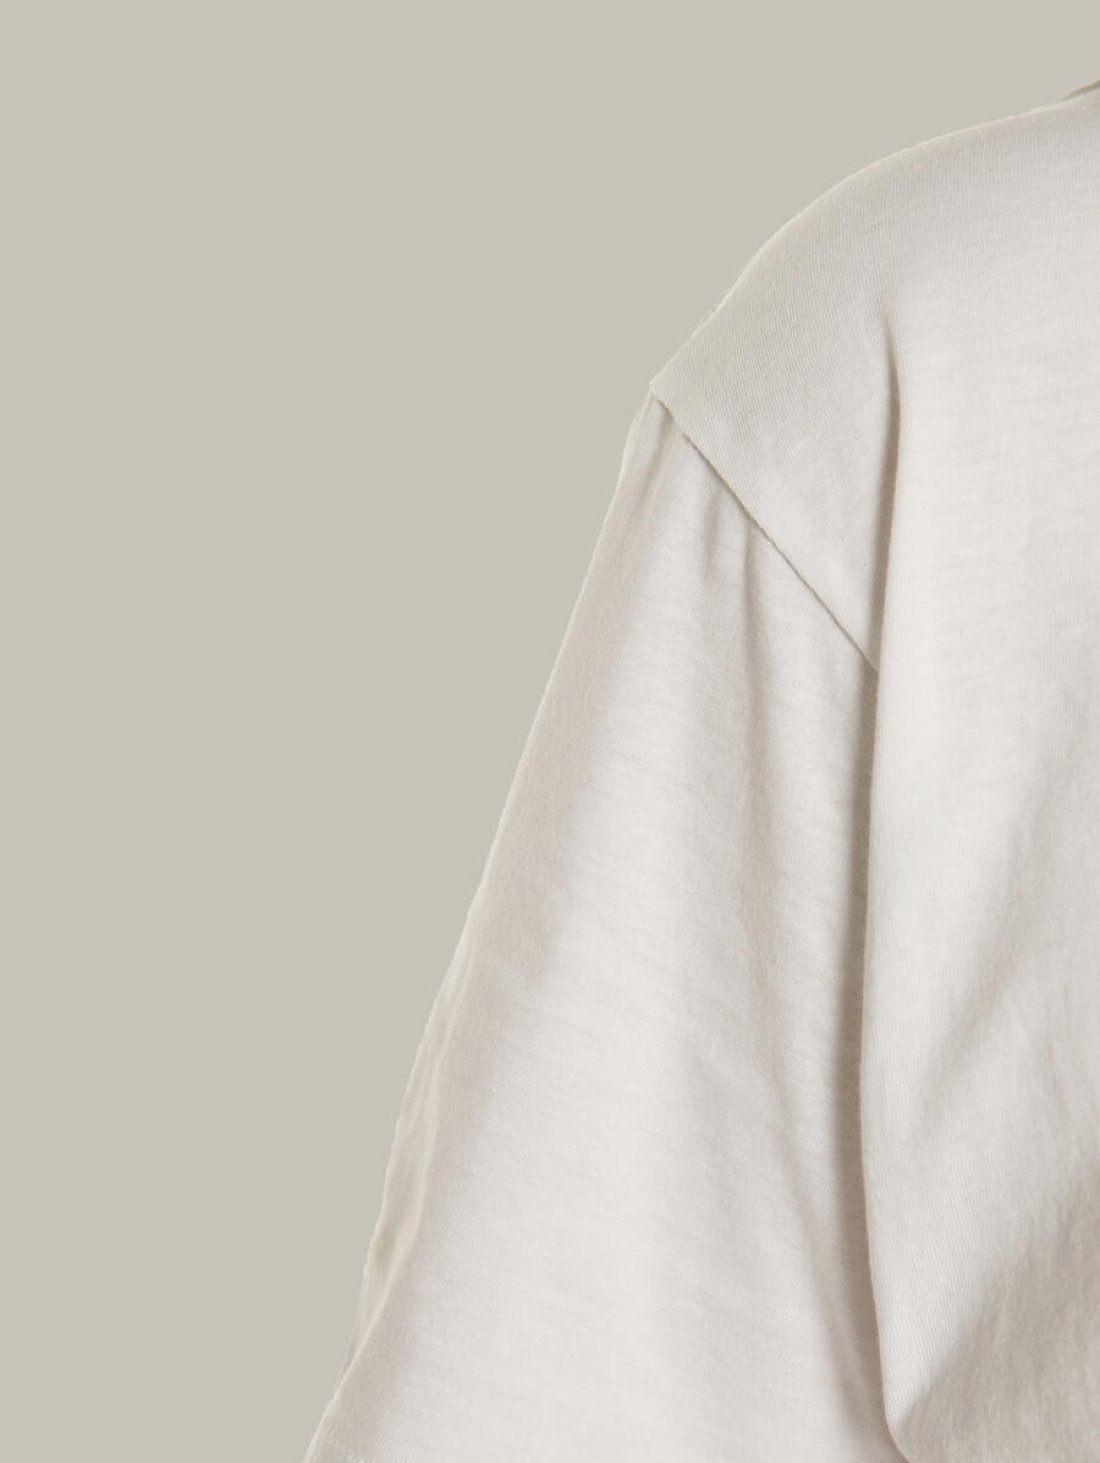 Чоловіча футболка, біла з принтом аватара Hopper 032